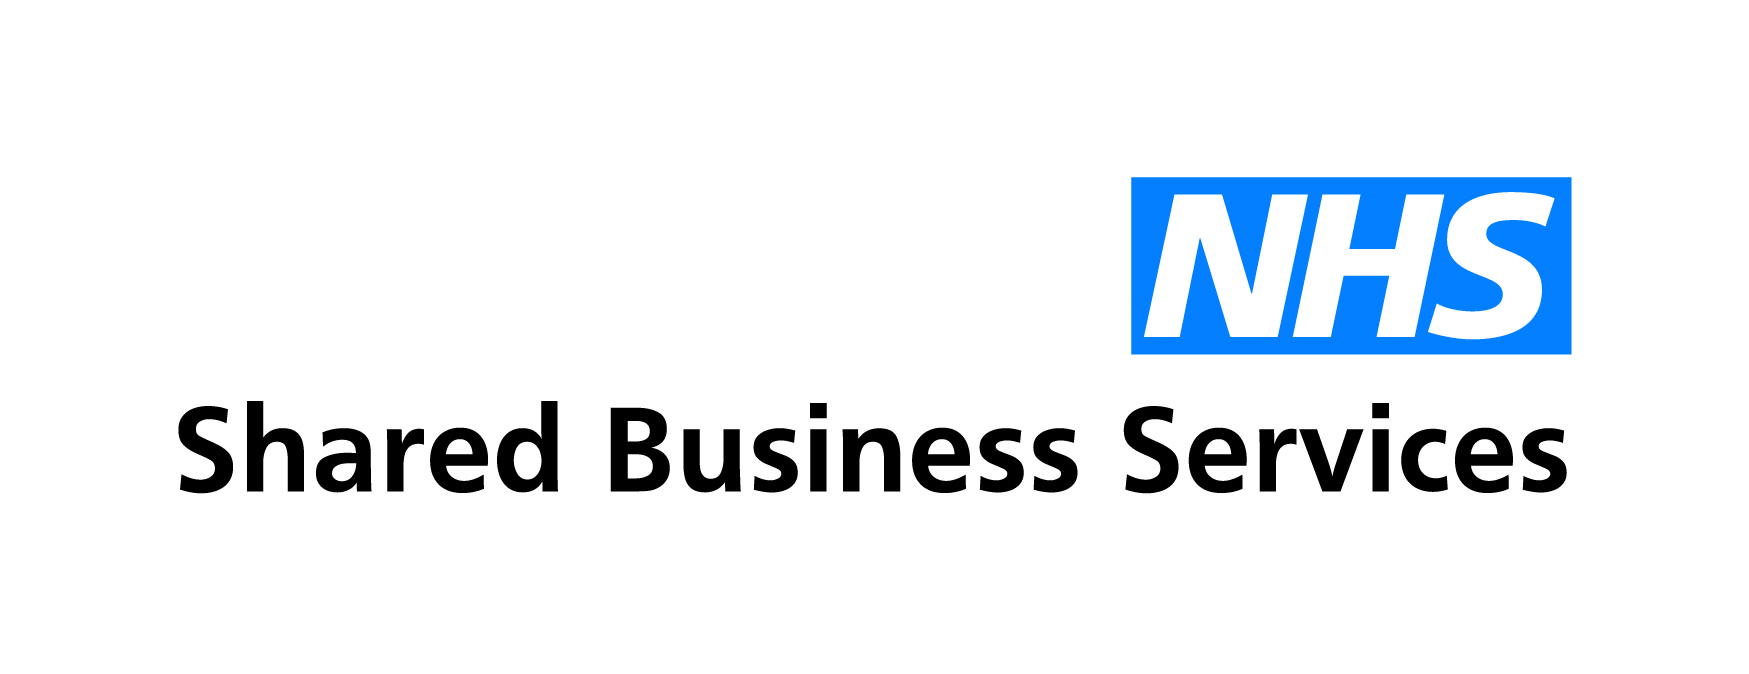 NHS SBS logo